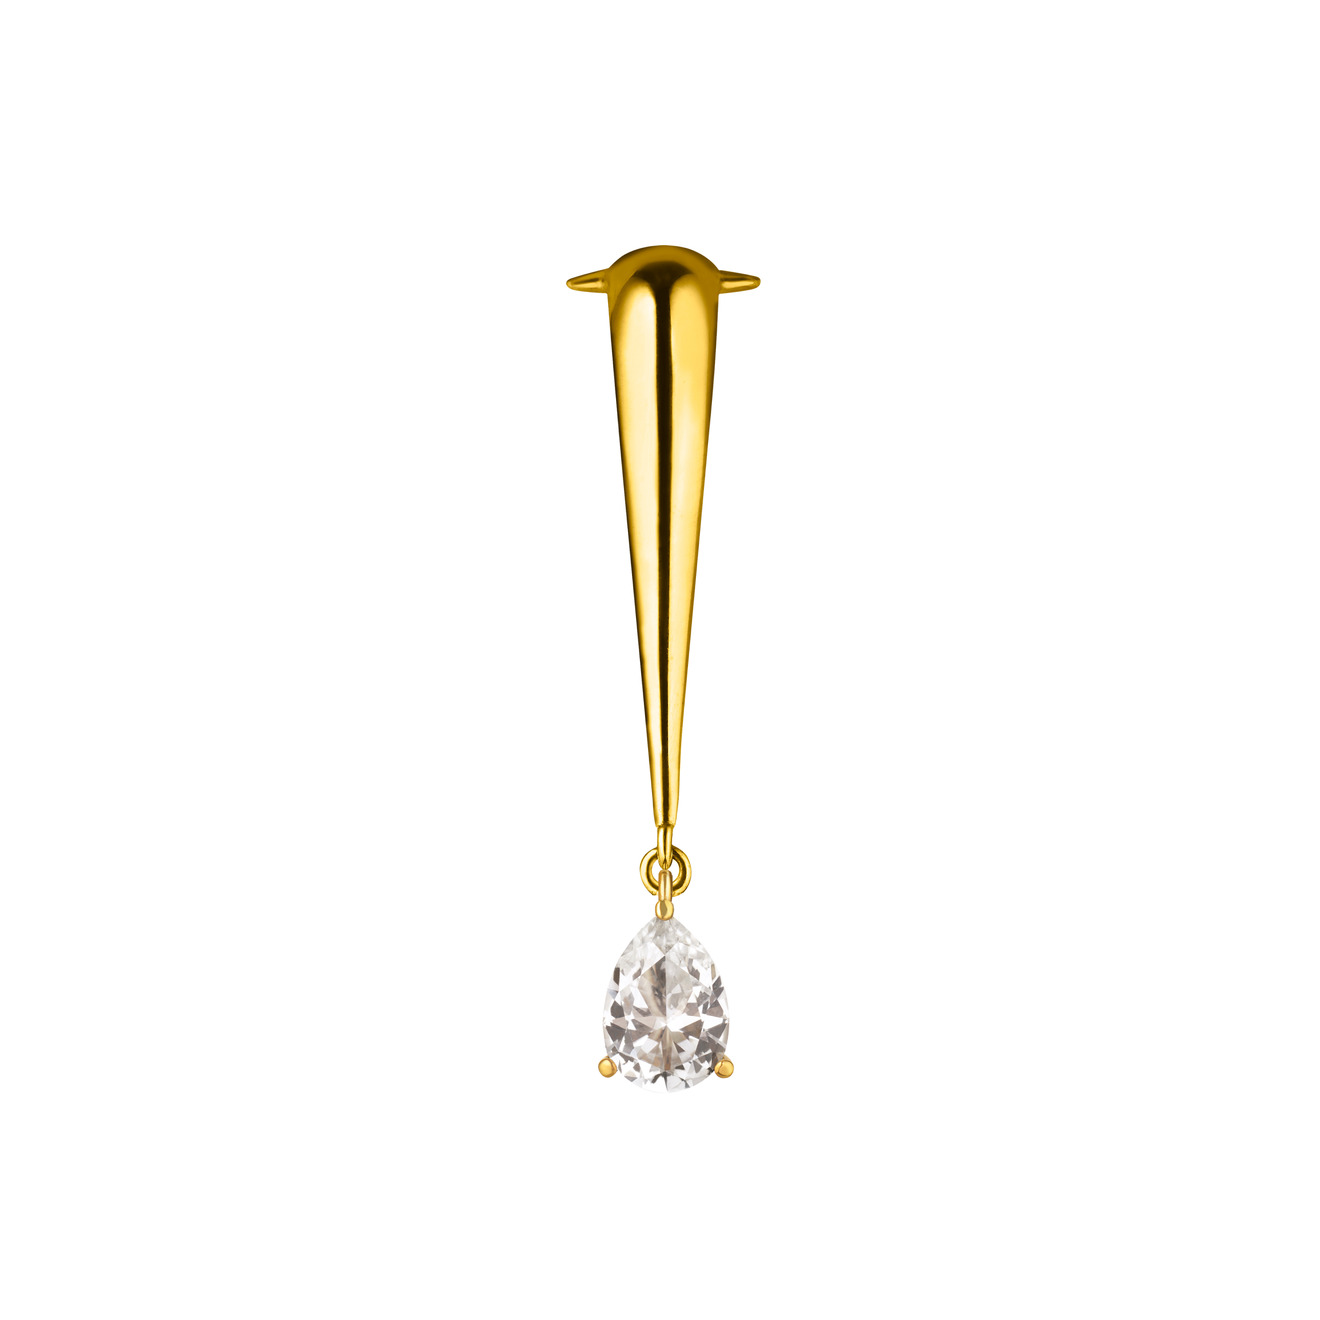 Vertigo Jewellery Lab Позолоченный клаймбер VENENUM CLIMBER TOPAZ из серебра с топазом vertigo jewellery lab позолоченный браслет bug pearl из серебра с жемчугом